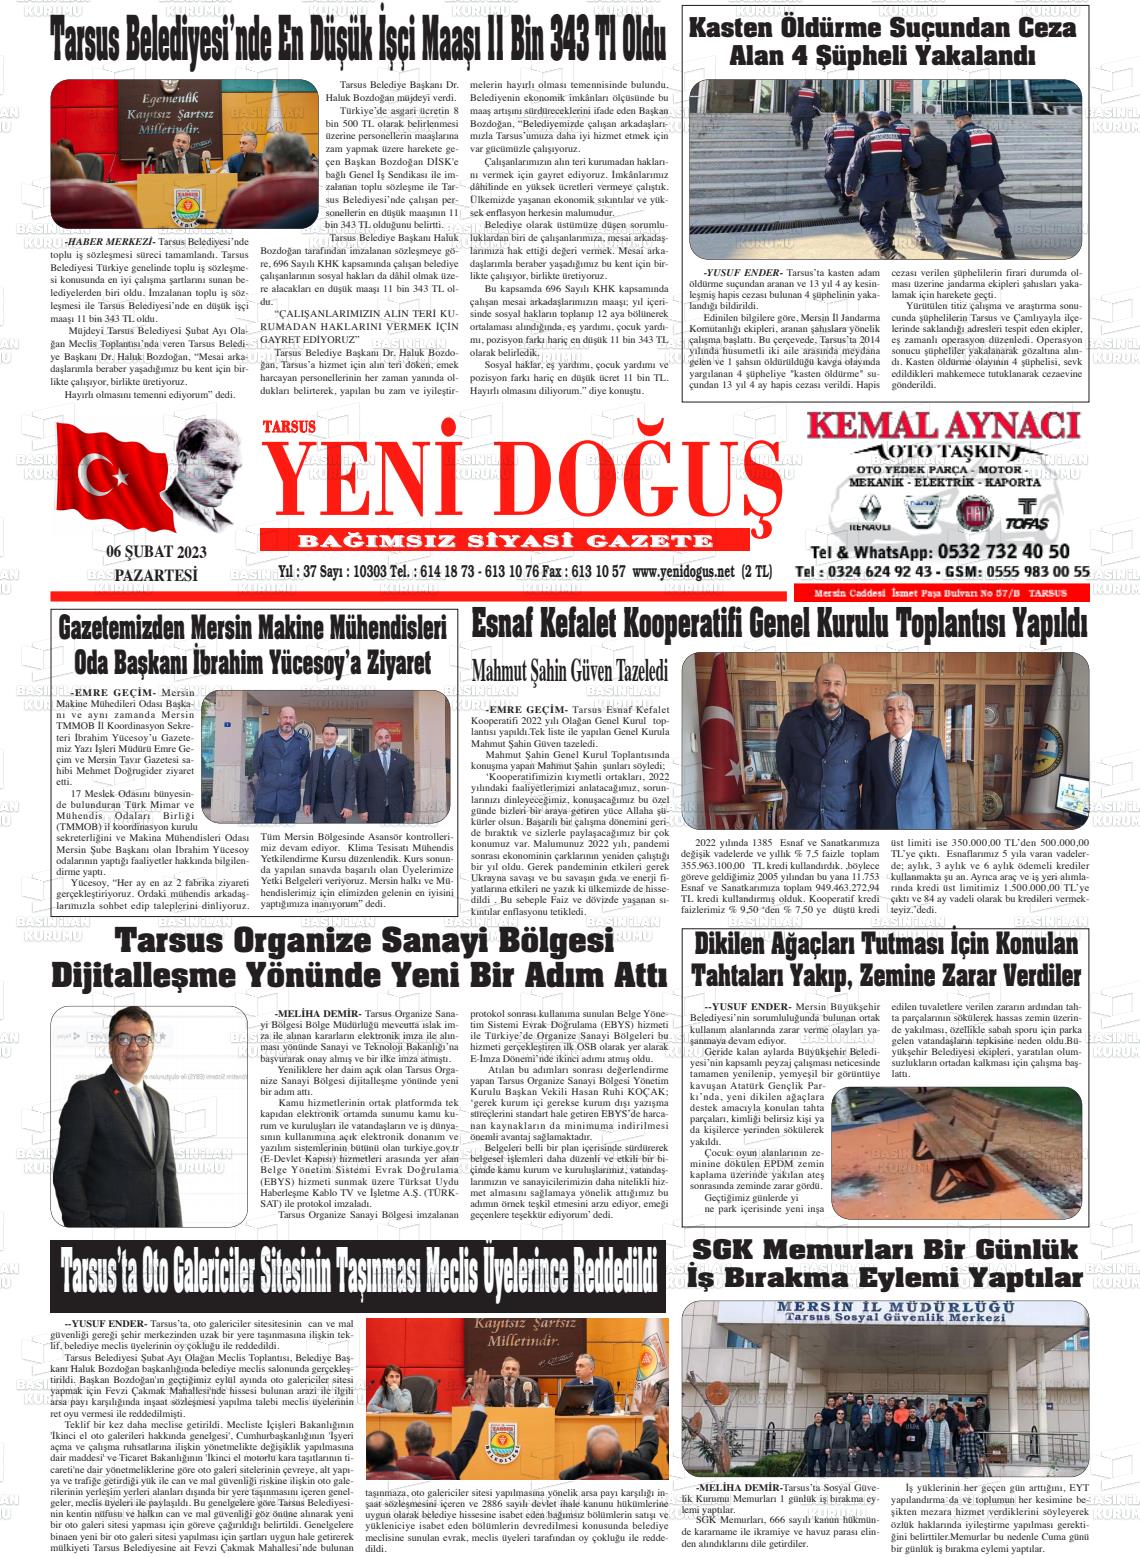 06 Şubat 2023 Tarsus Yeni Doğuş Gazete Manşeti